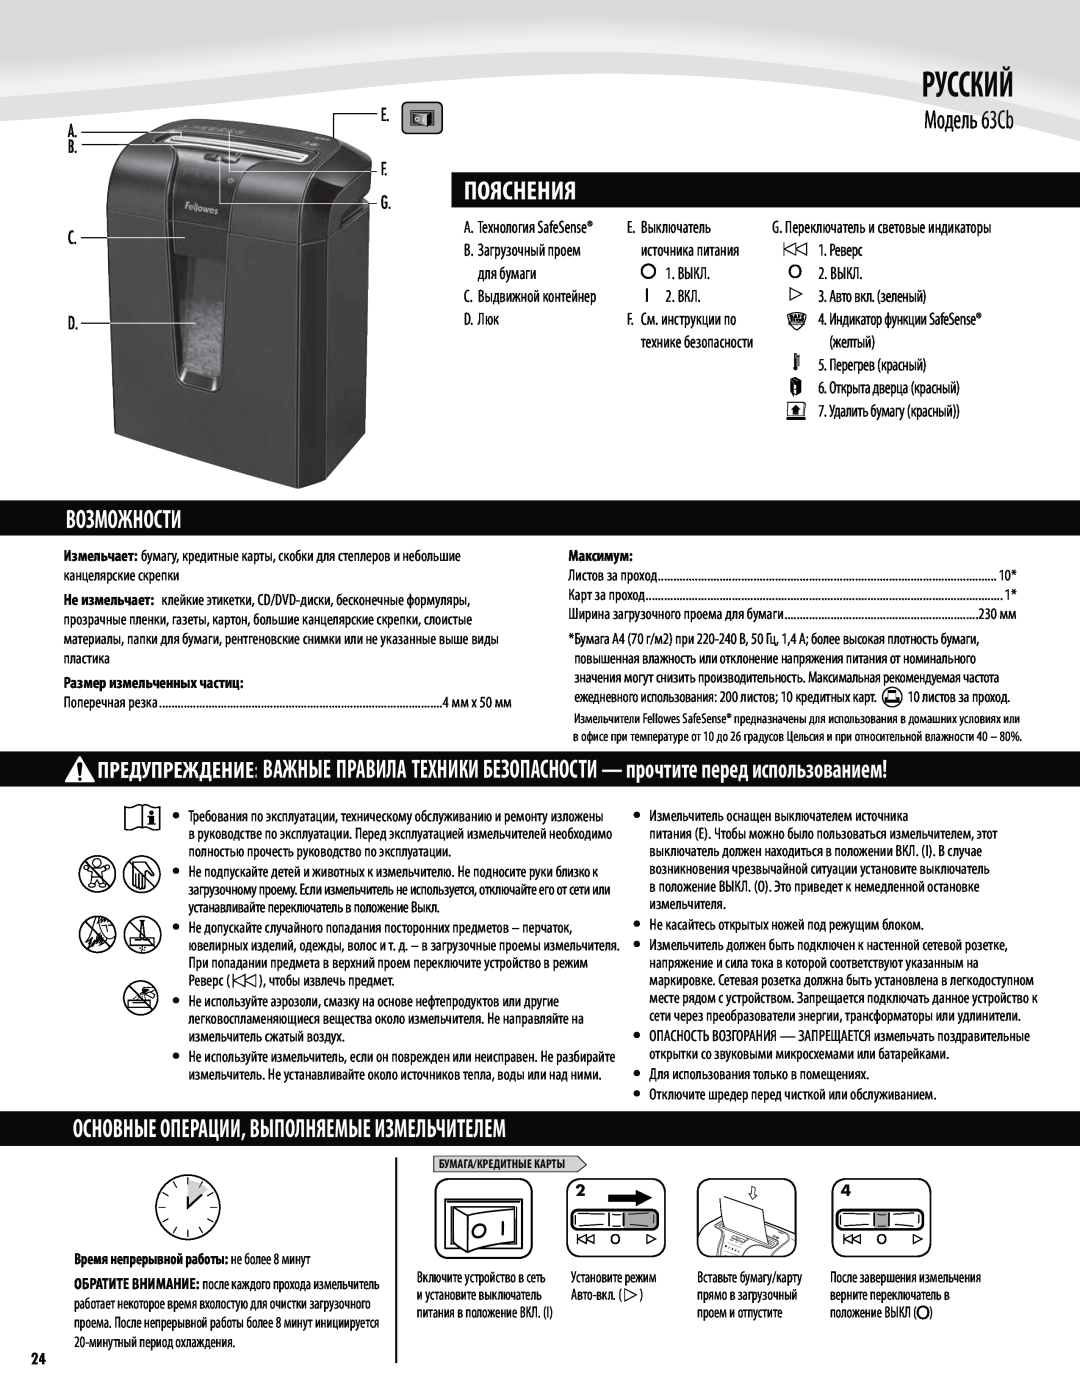 Fellowes 63cb manual Русский, Модель 63Cb, Возможности, Основные Операции, Выполняемые Измельчителем, Пояснения 